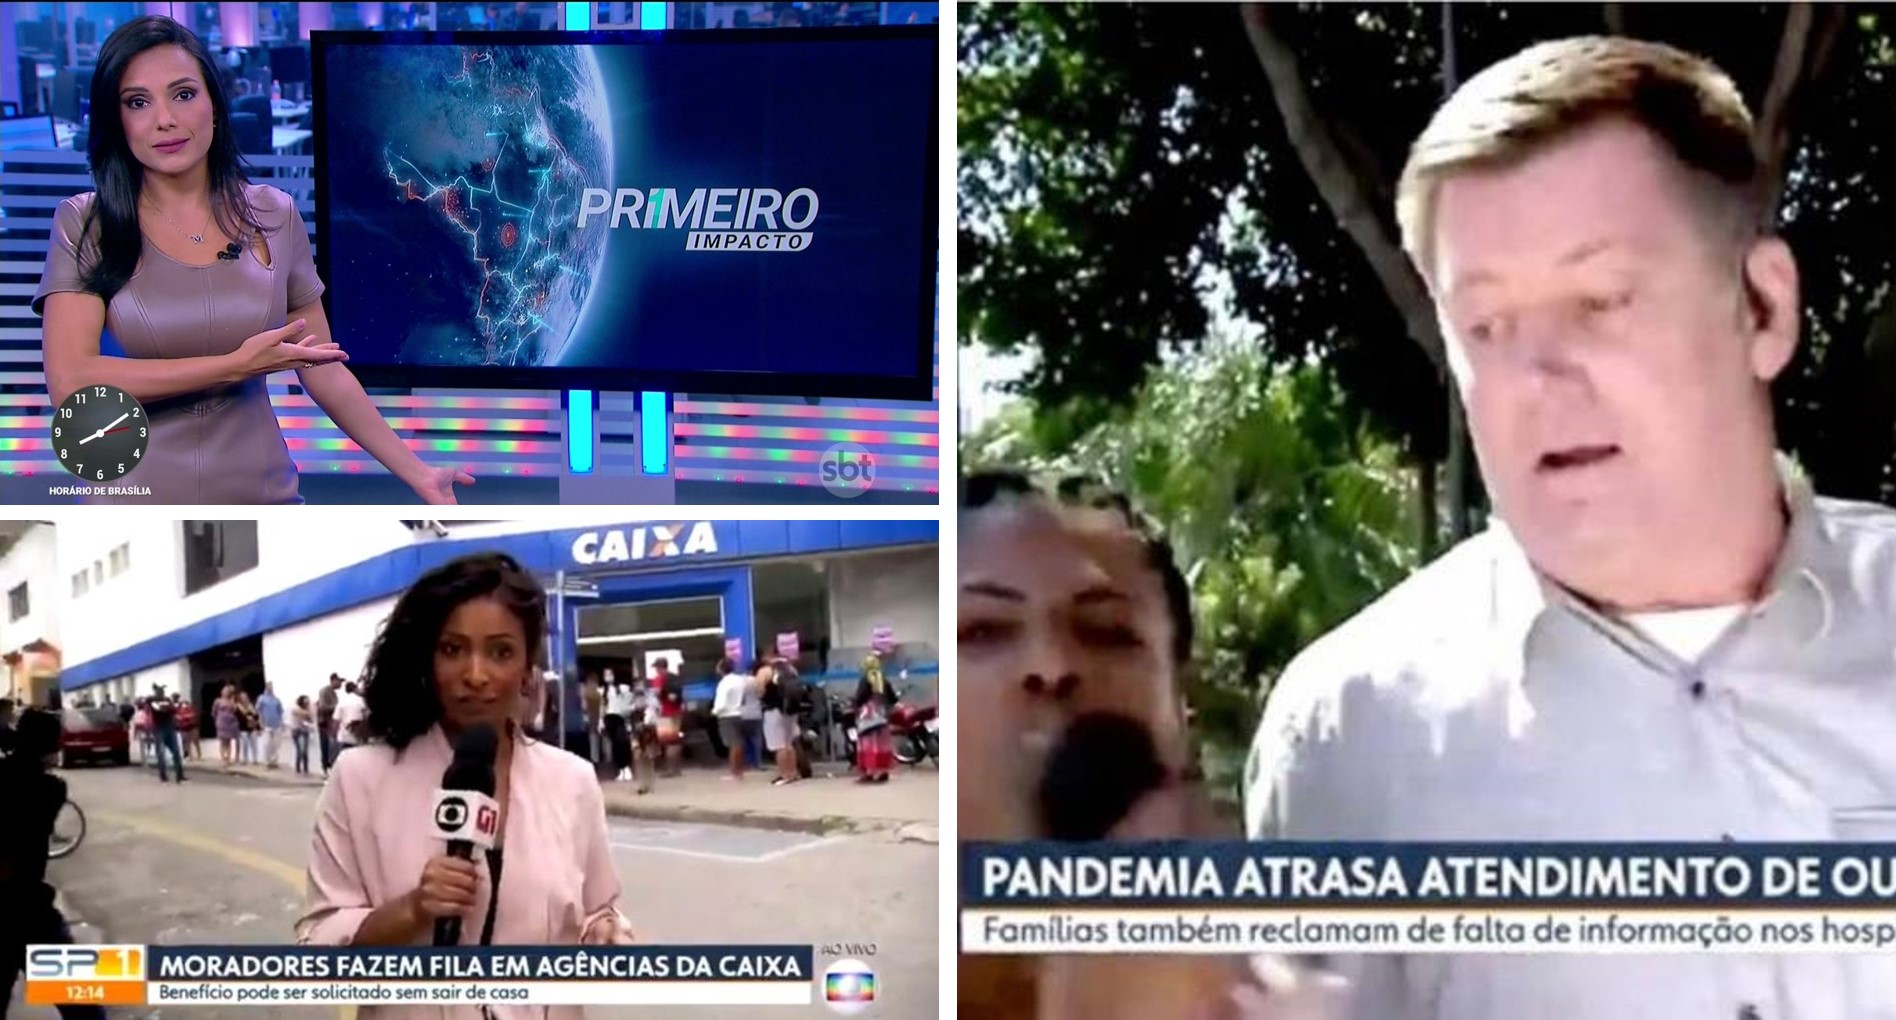 Reportagens ao vivo são invadidas por manifestes politicos em meio a pandemia do corona vírus emissoras de TV preocupadas com ataques a imprensa